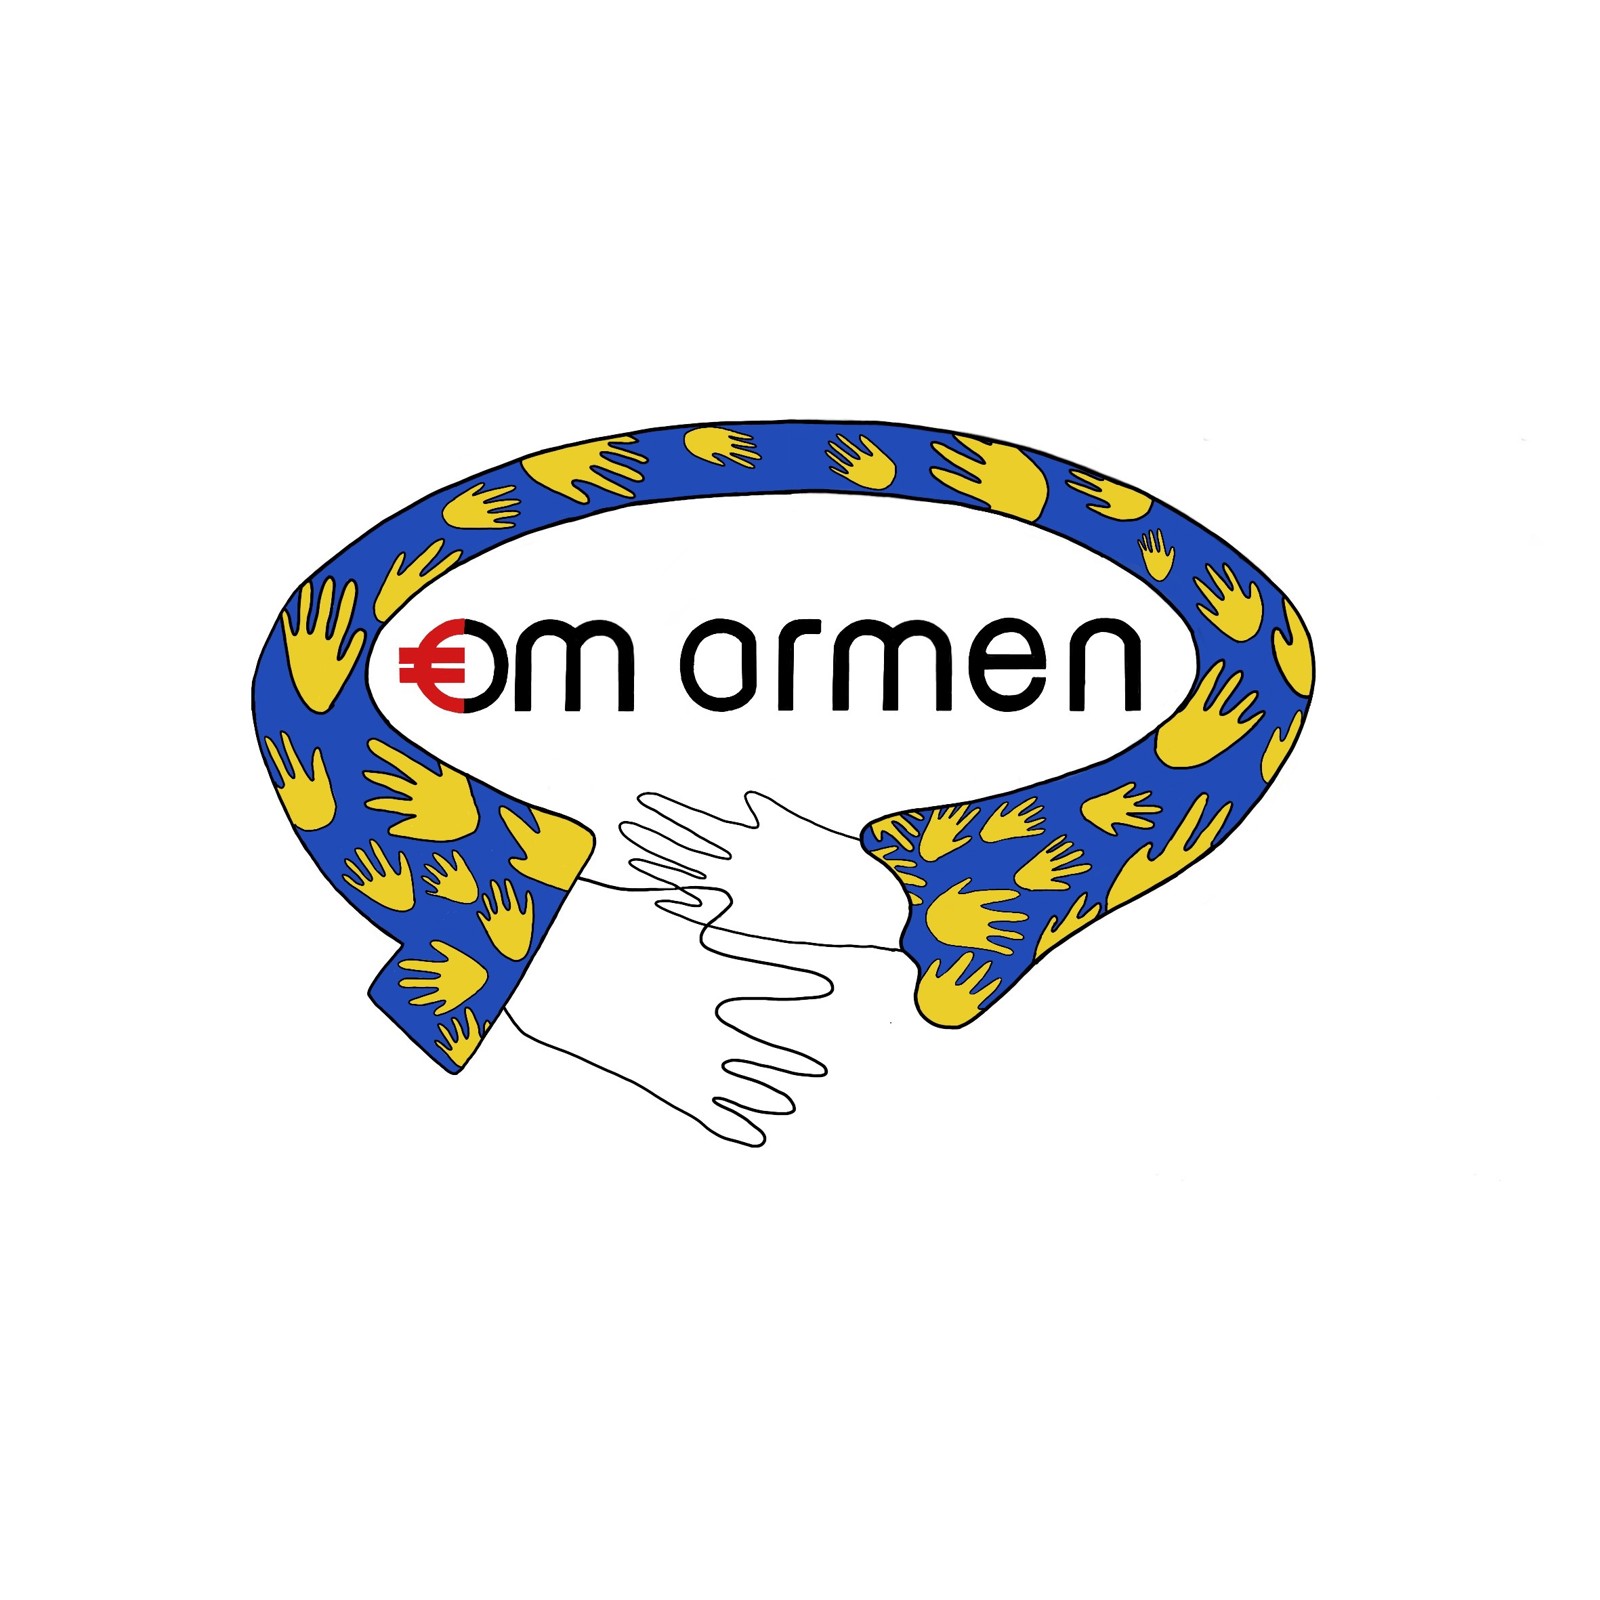 Omarmen